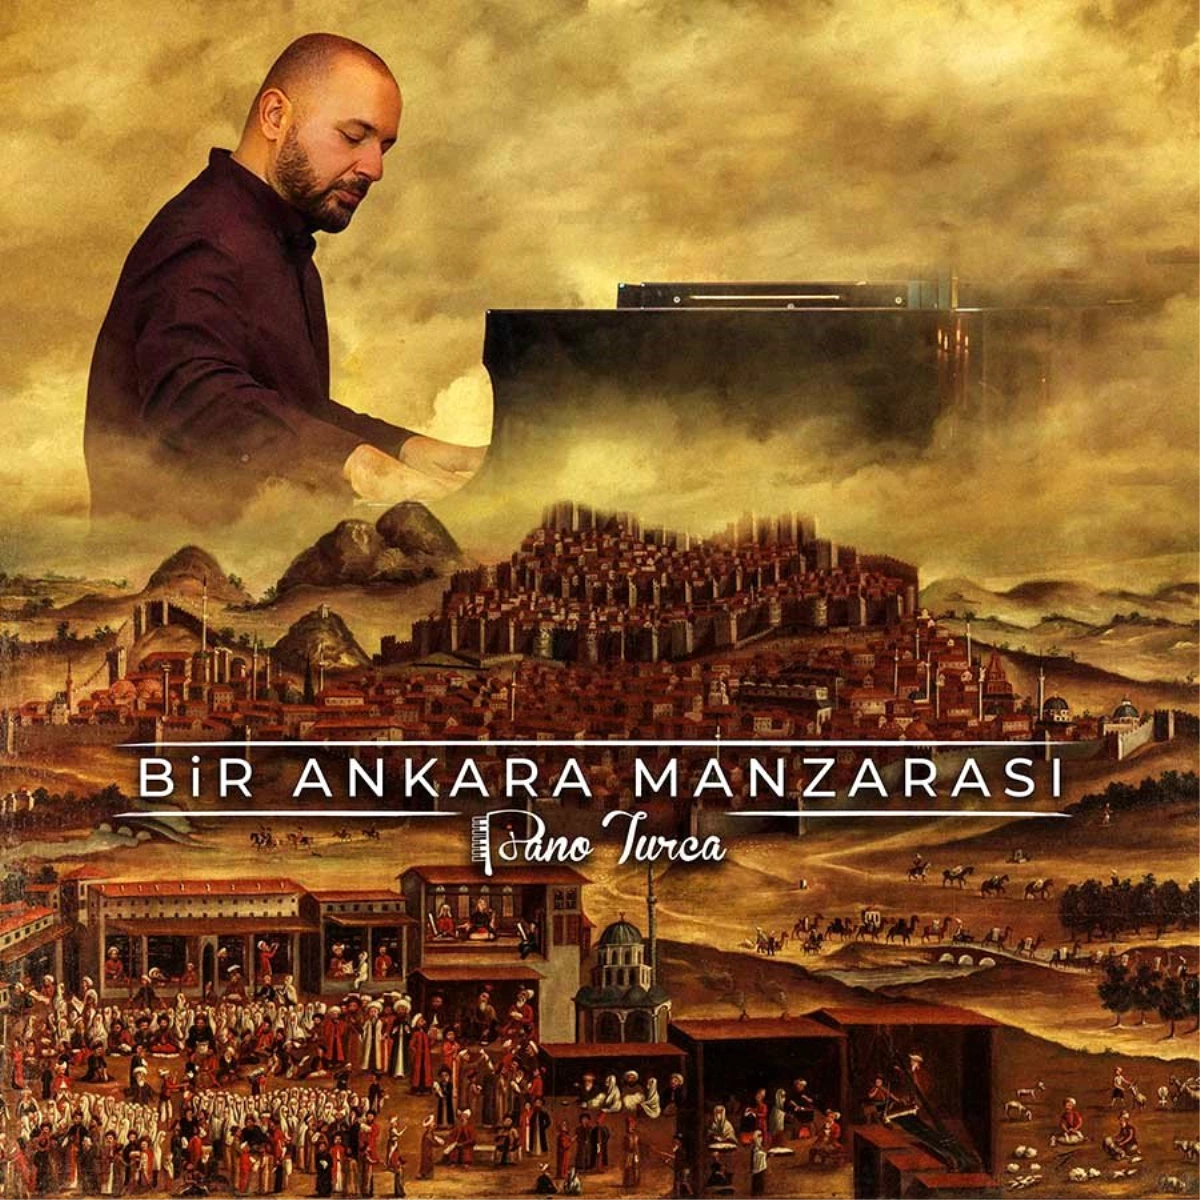 300 yıllık "Ankara Manzarası" Piano Turca ile yeniden canlandı